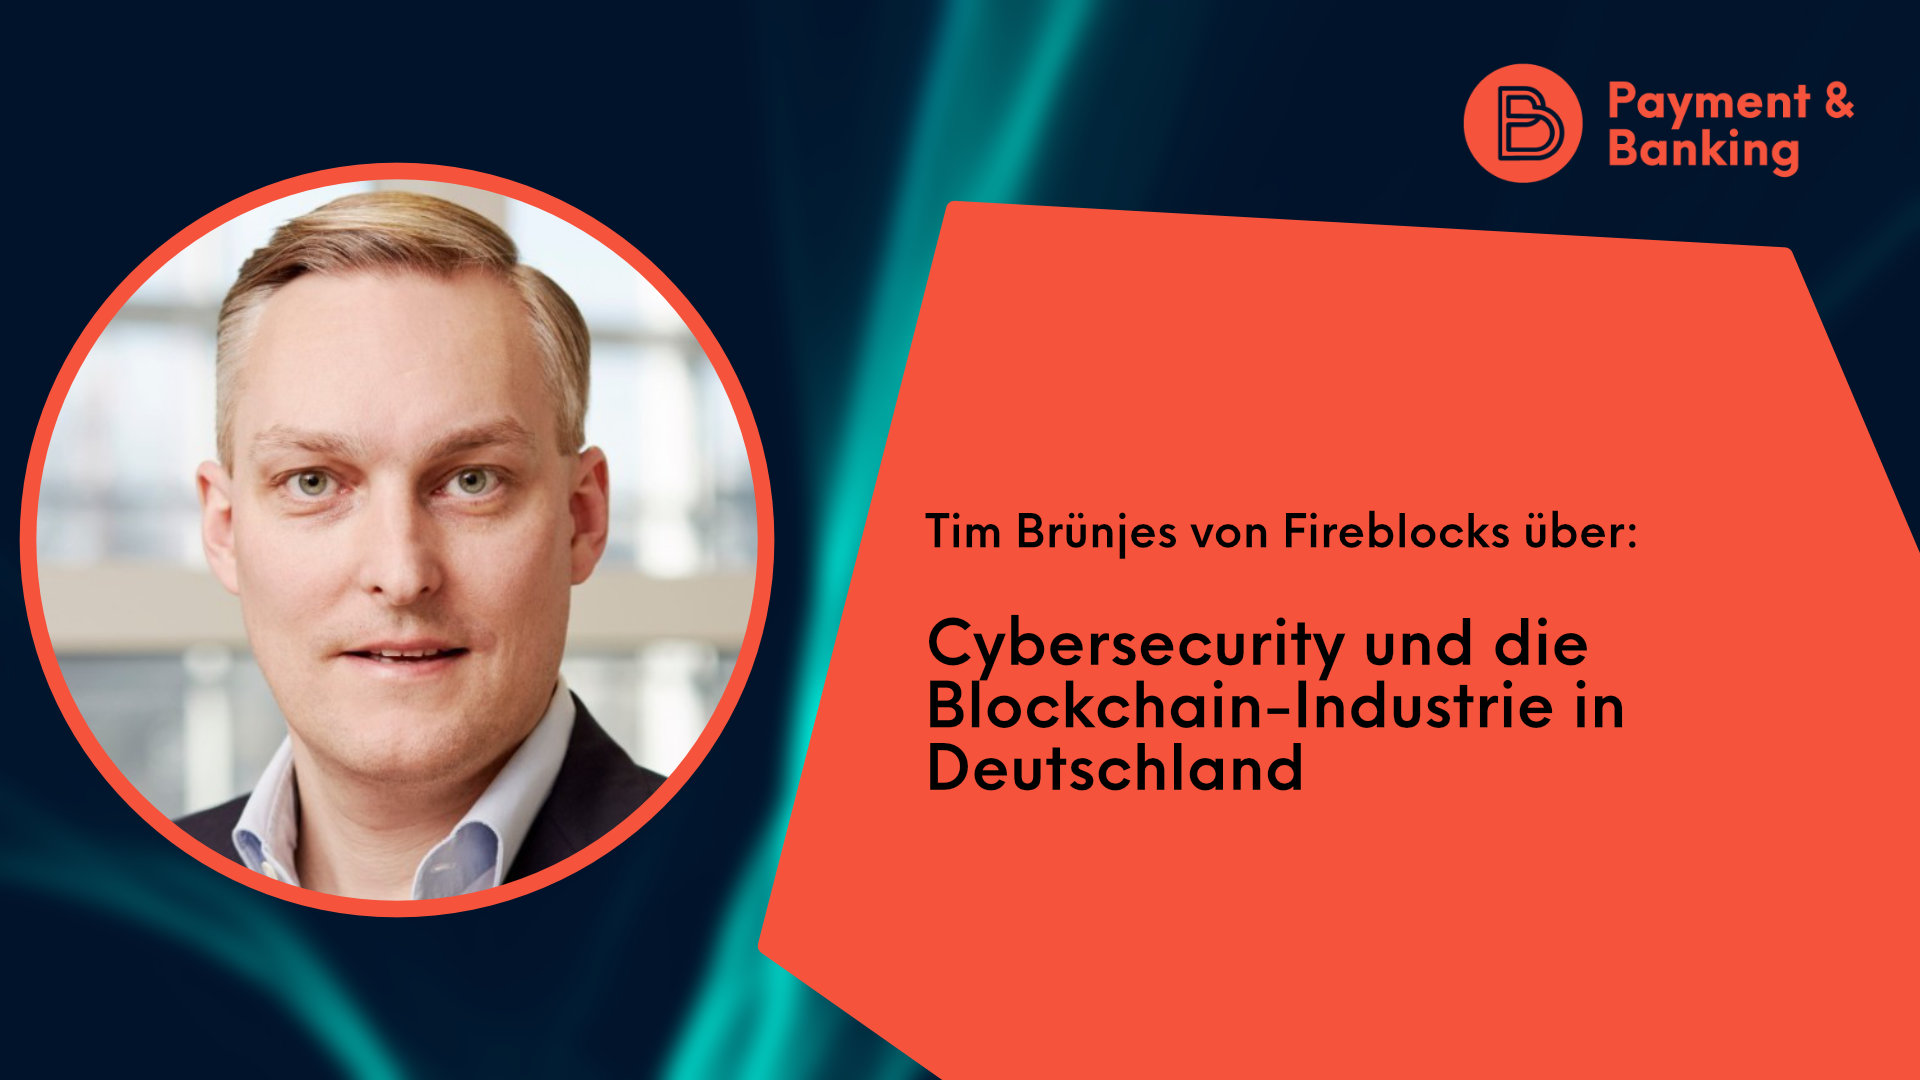 Tim Brünjes von Fireblocks über Cybersecurity und Blockchain